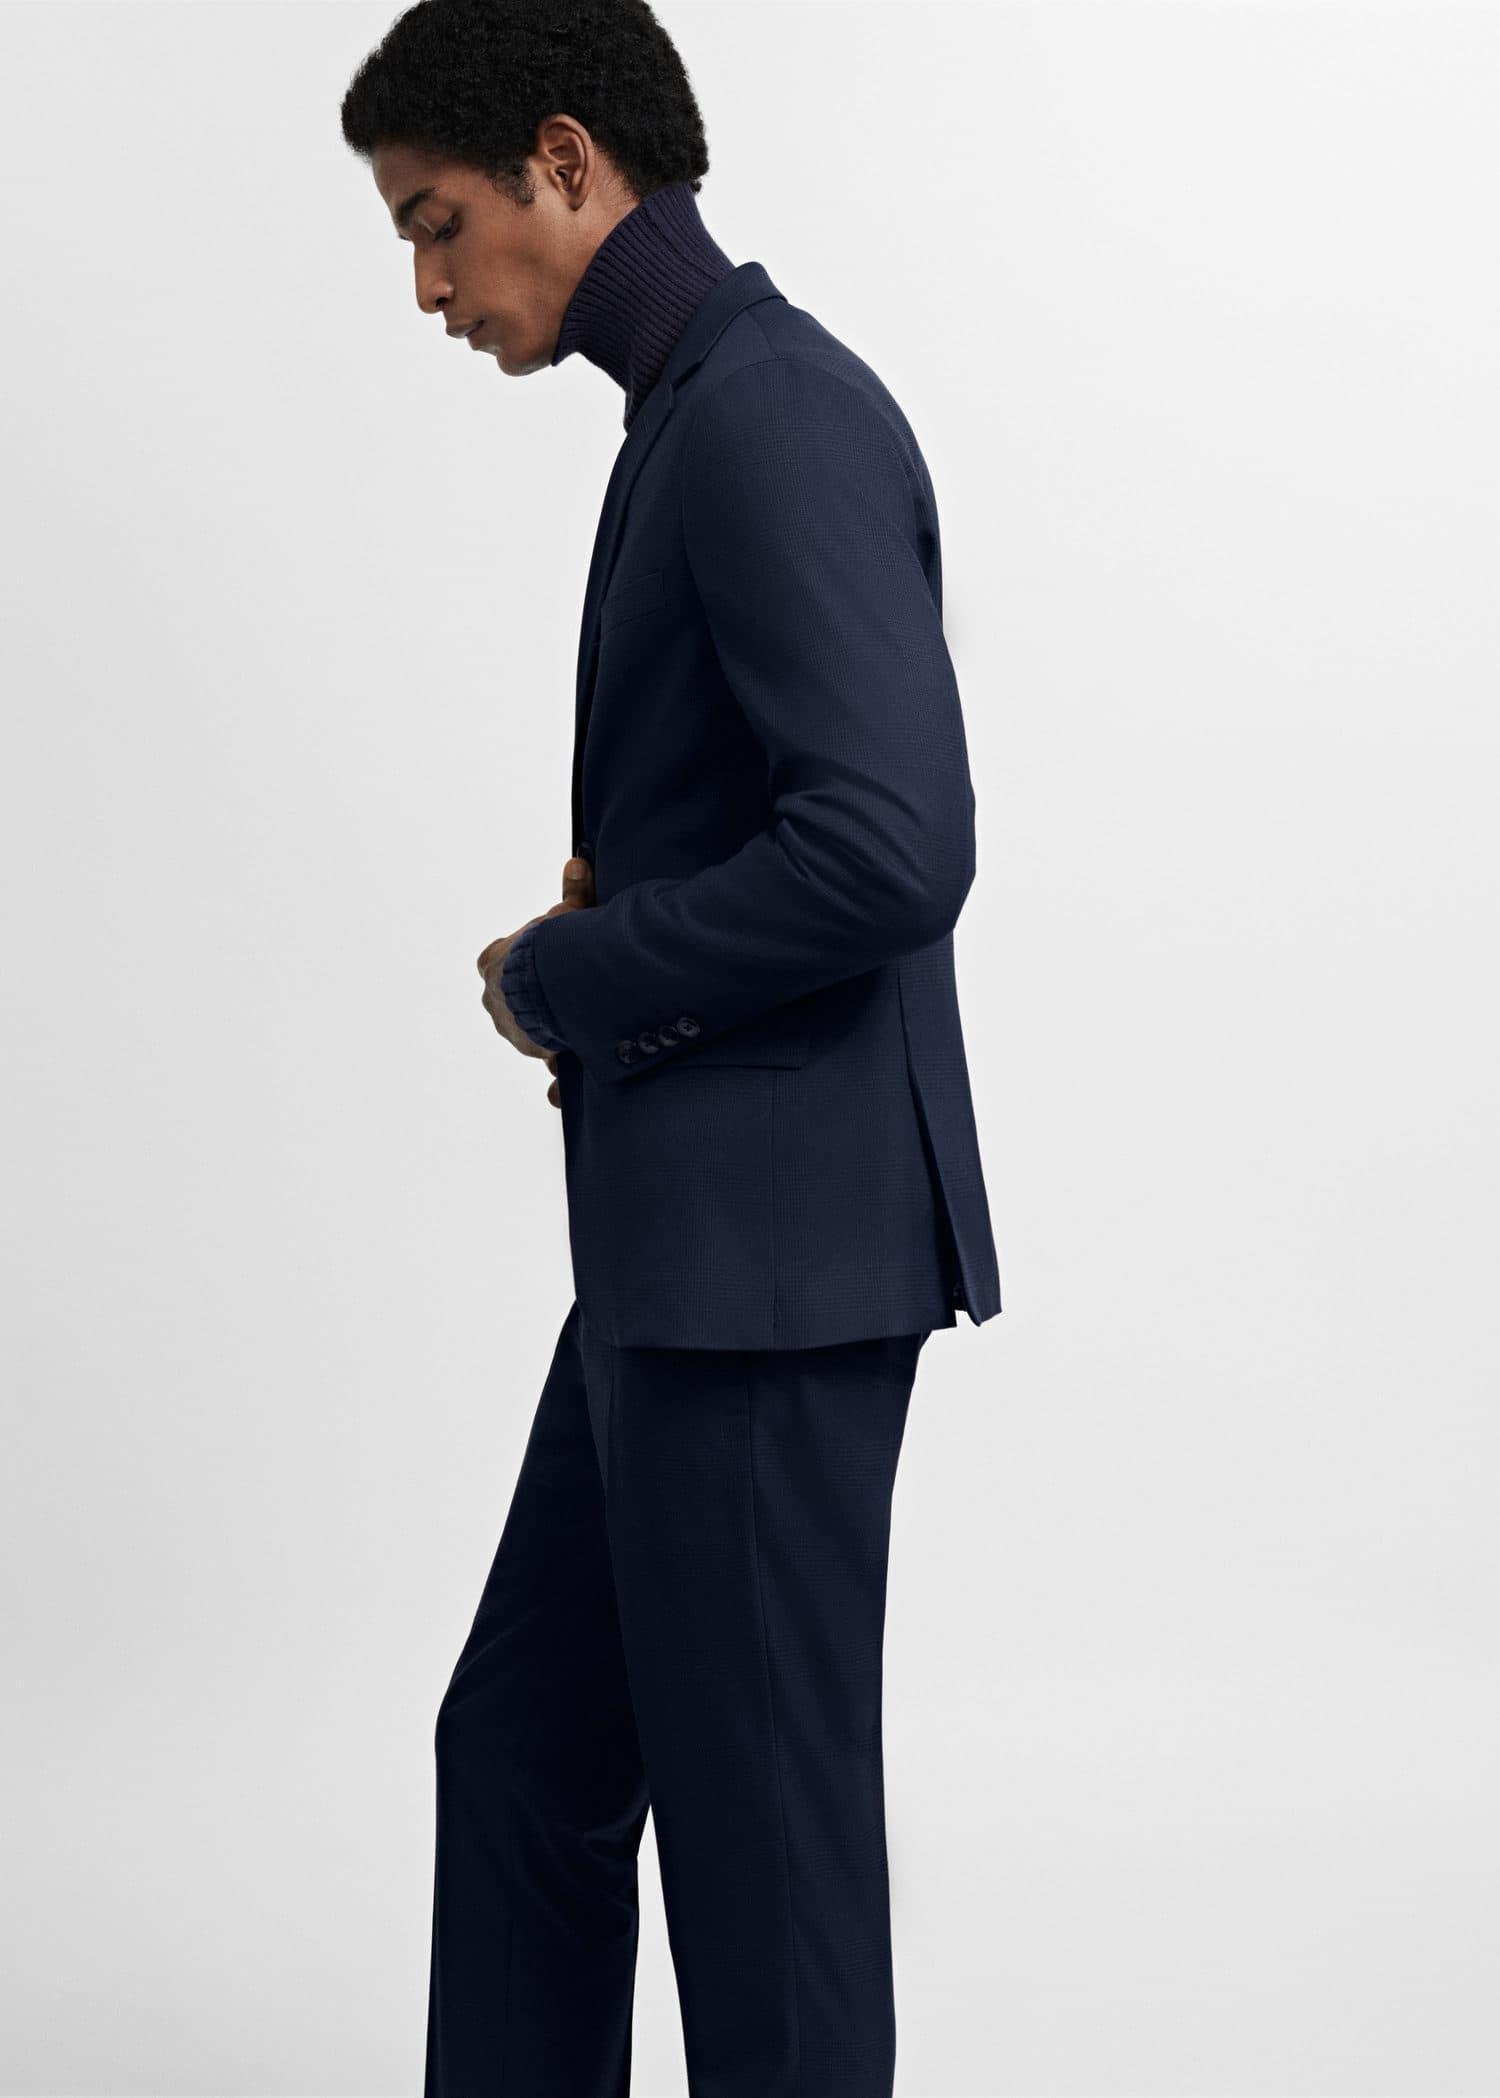 Mango - Navy Super Slim-Fit Suit Jacket